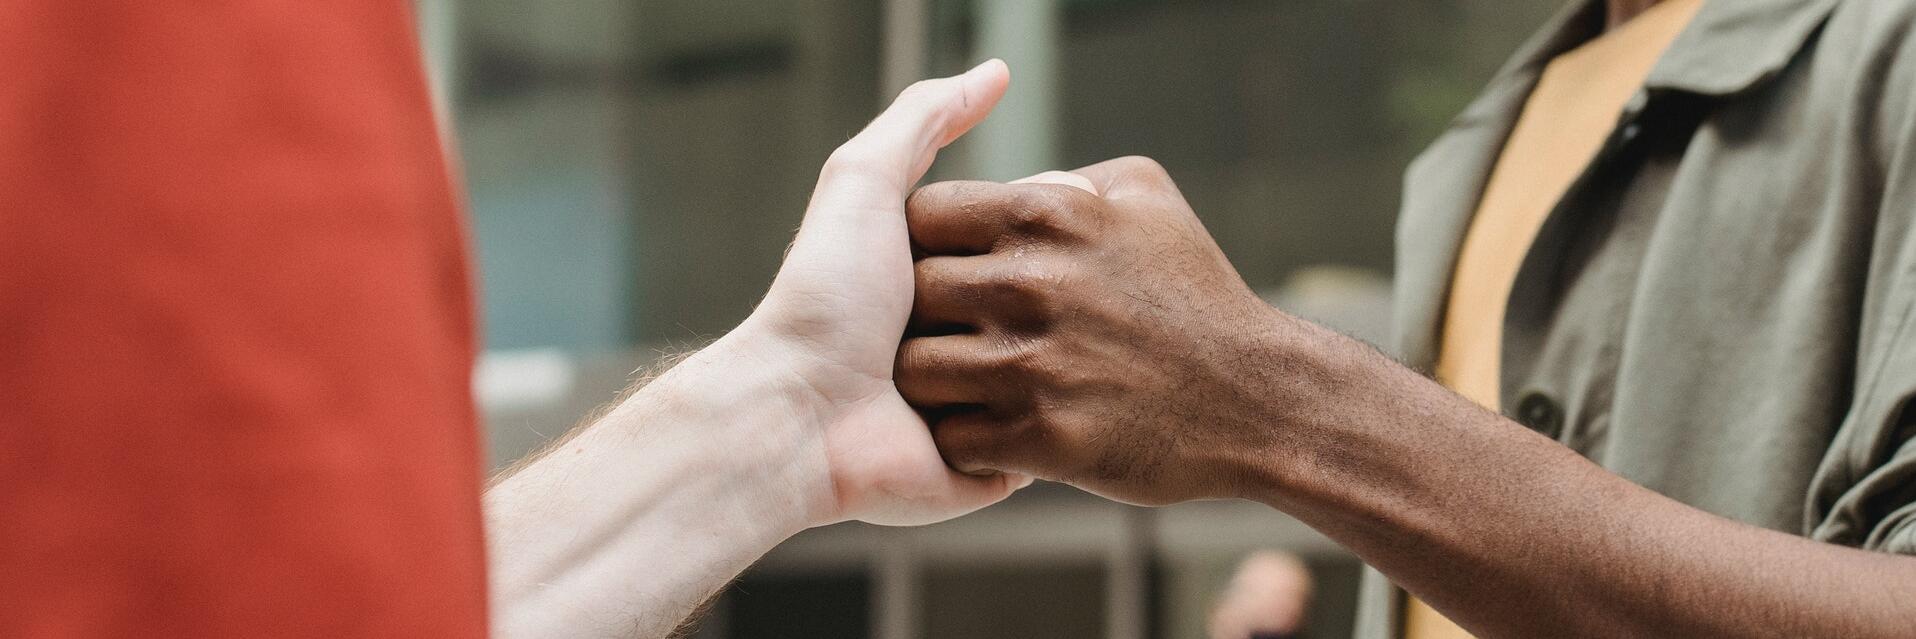 Zwei Menschen geben sich die Hand.